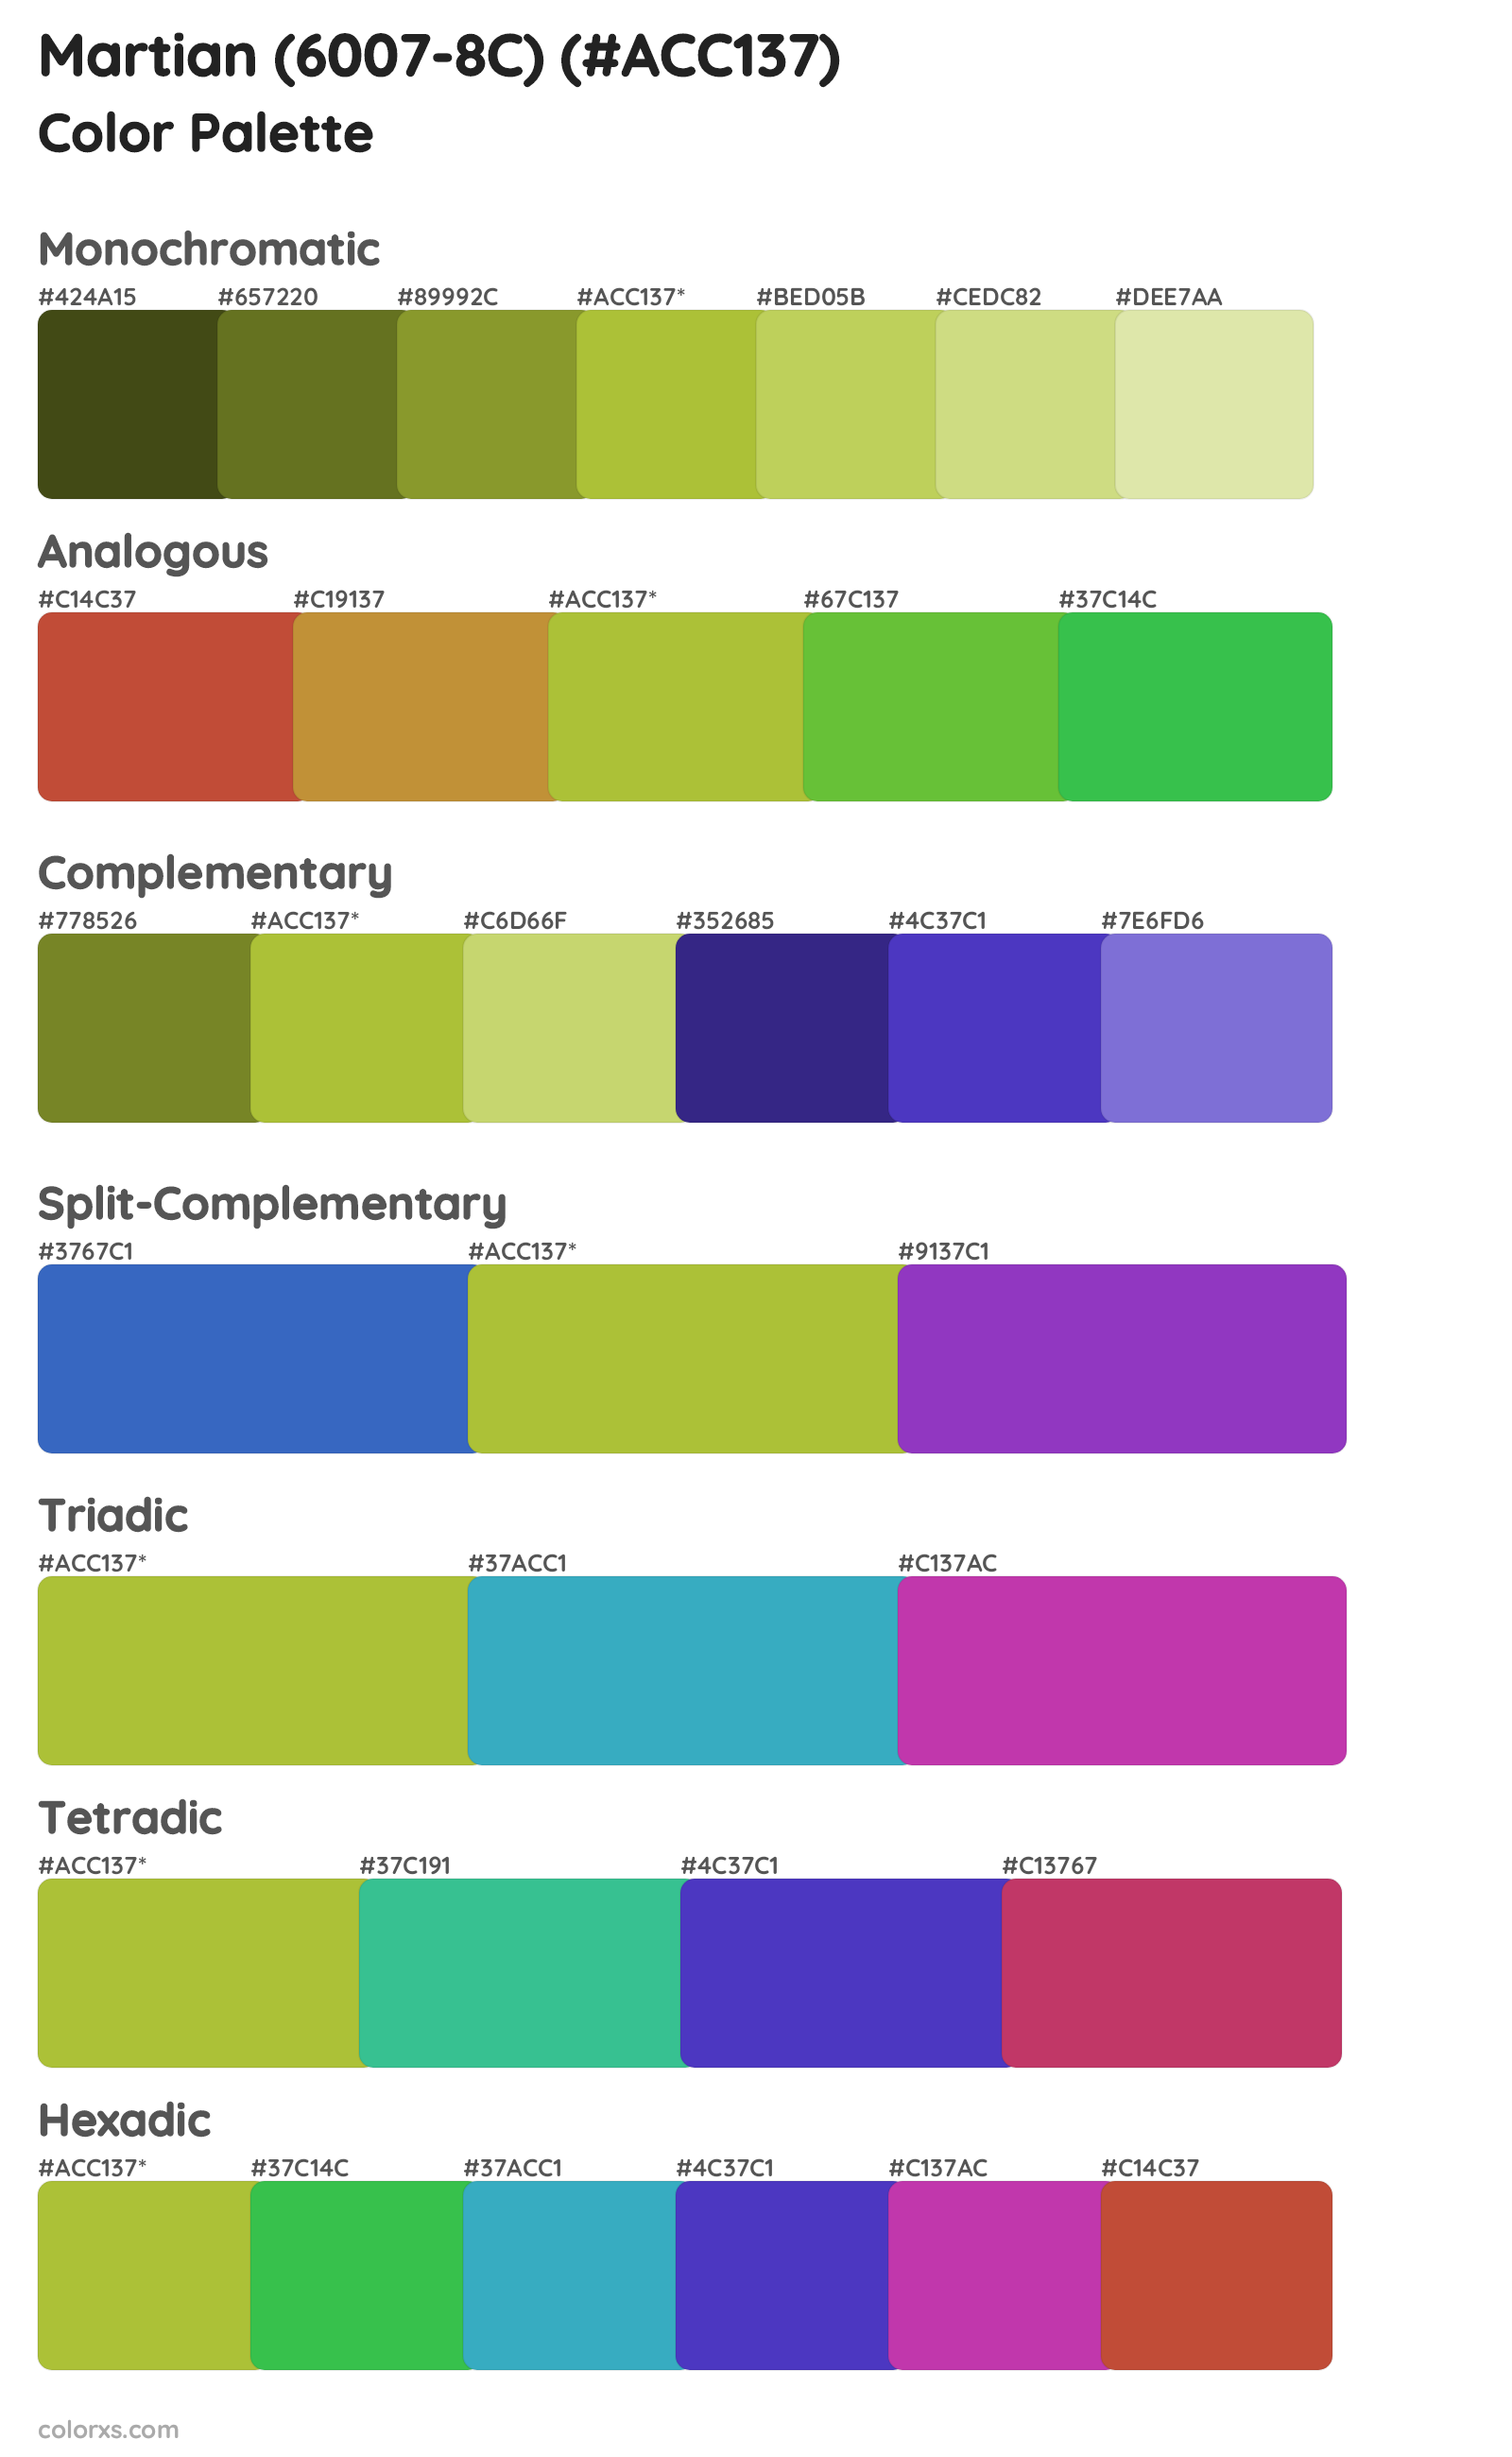 Martian (6007-8C) Color Scheme Palettes